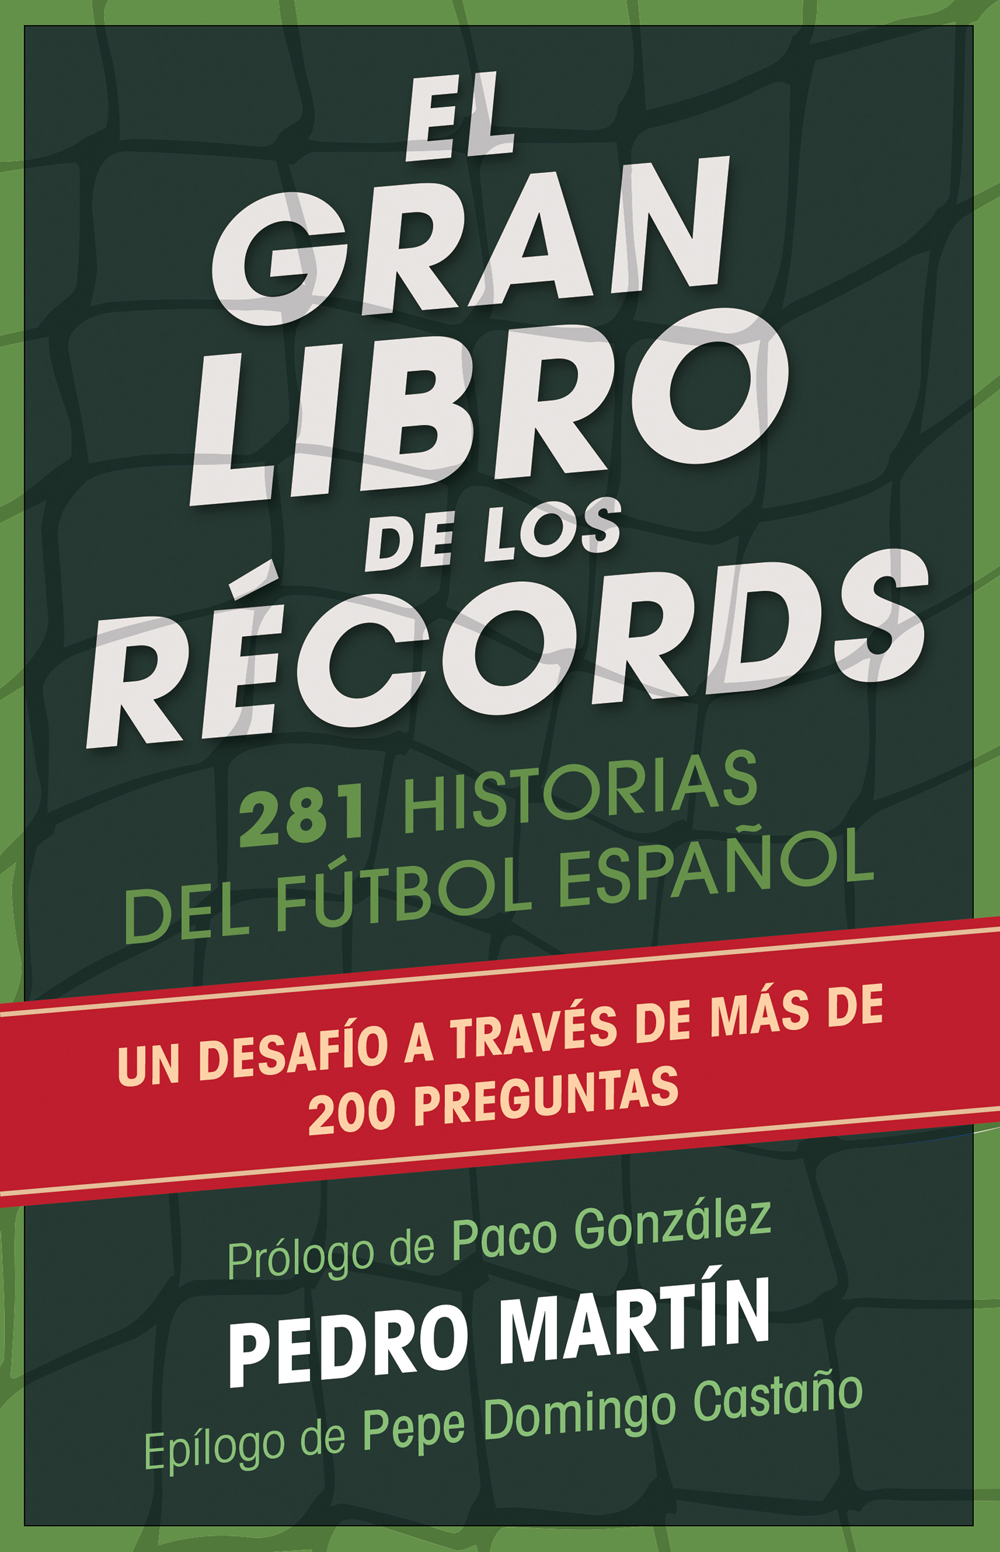 El gran libro de los récords 200 historias del fútbol español - image 1